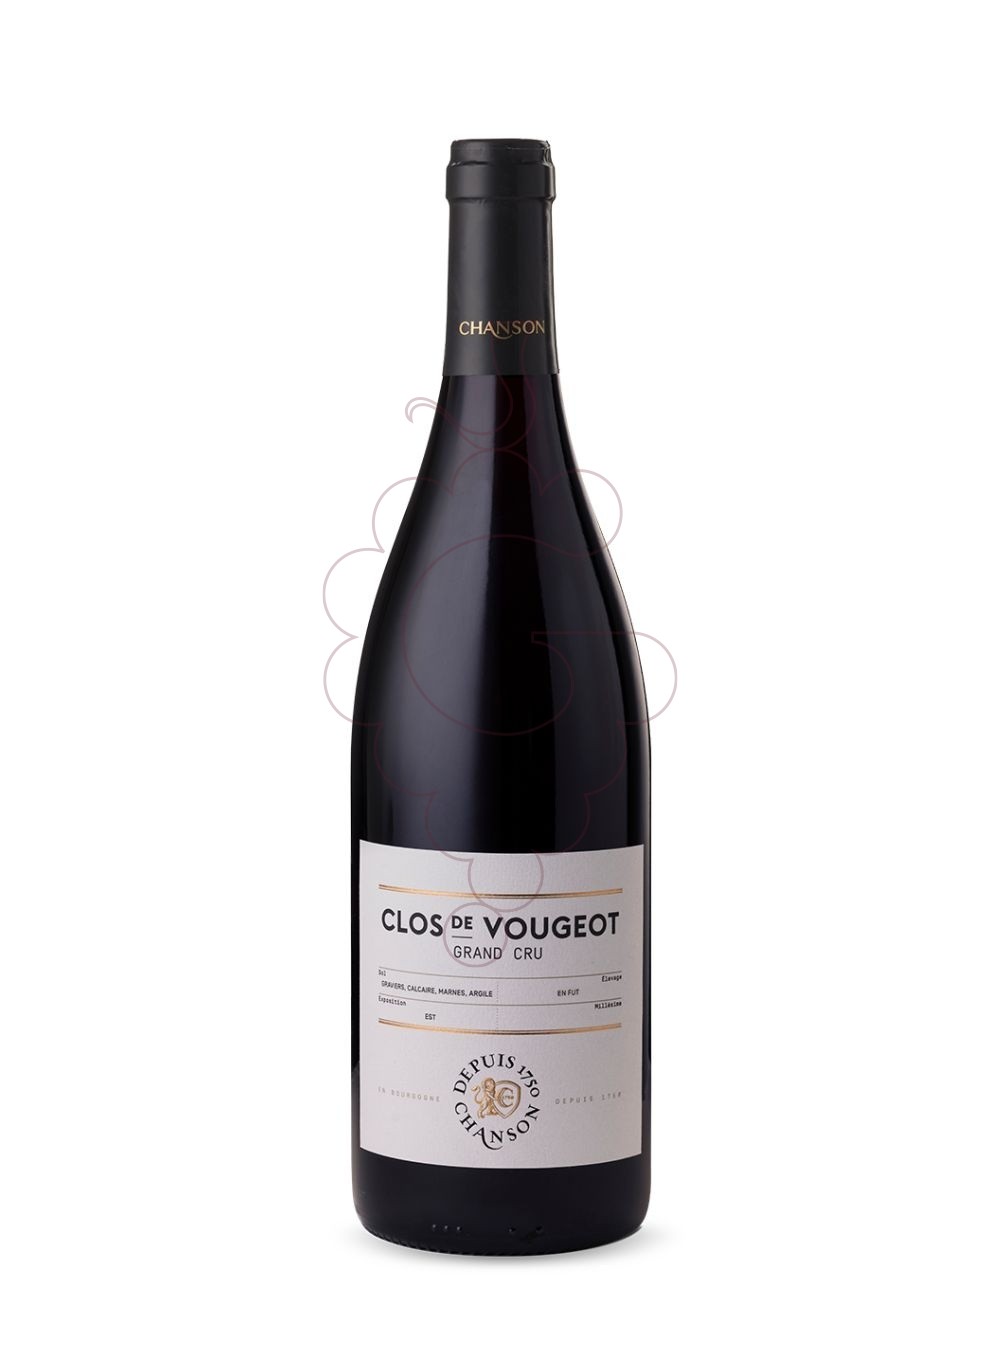 Foto Chanson Clos de Vougeot Grand Cru vi negre